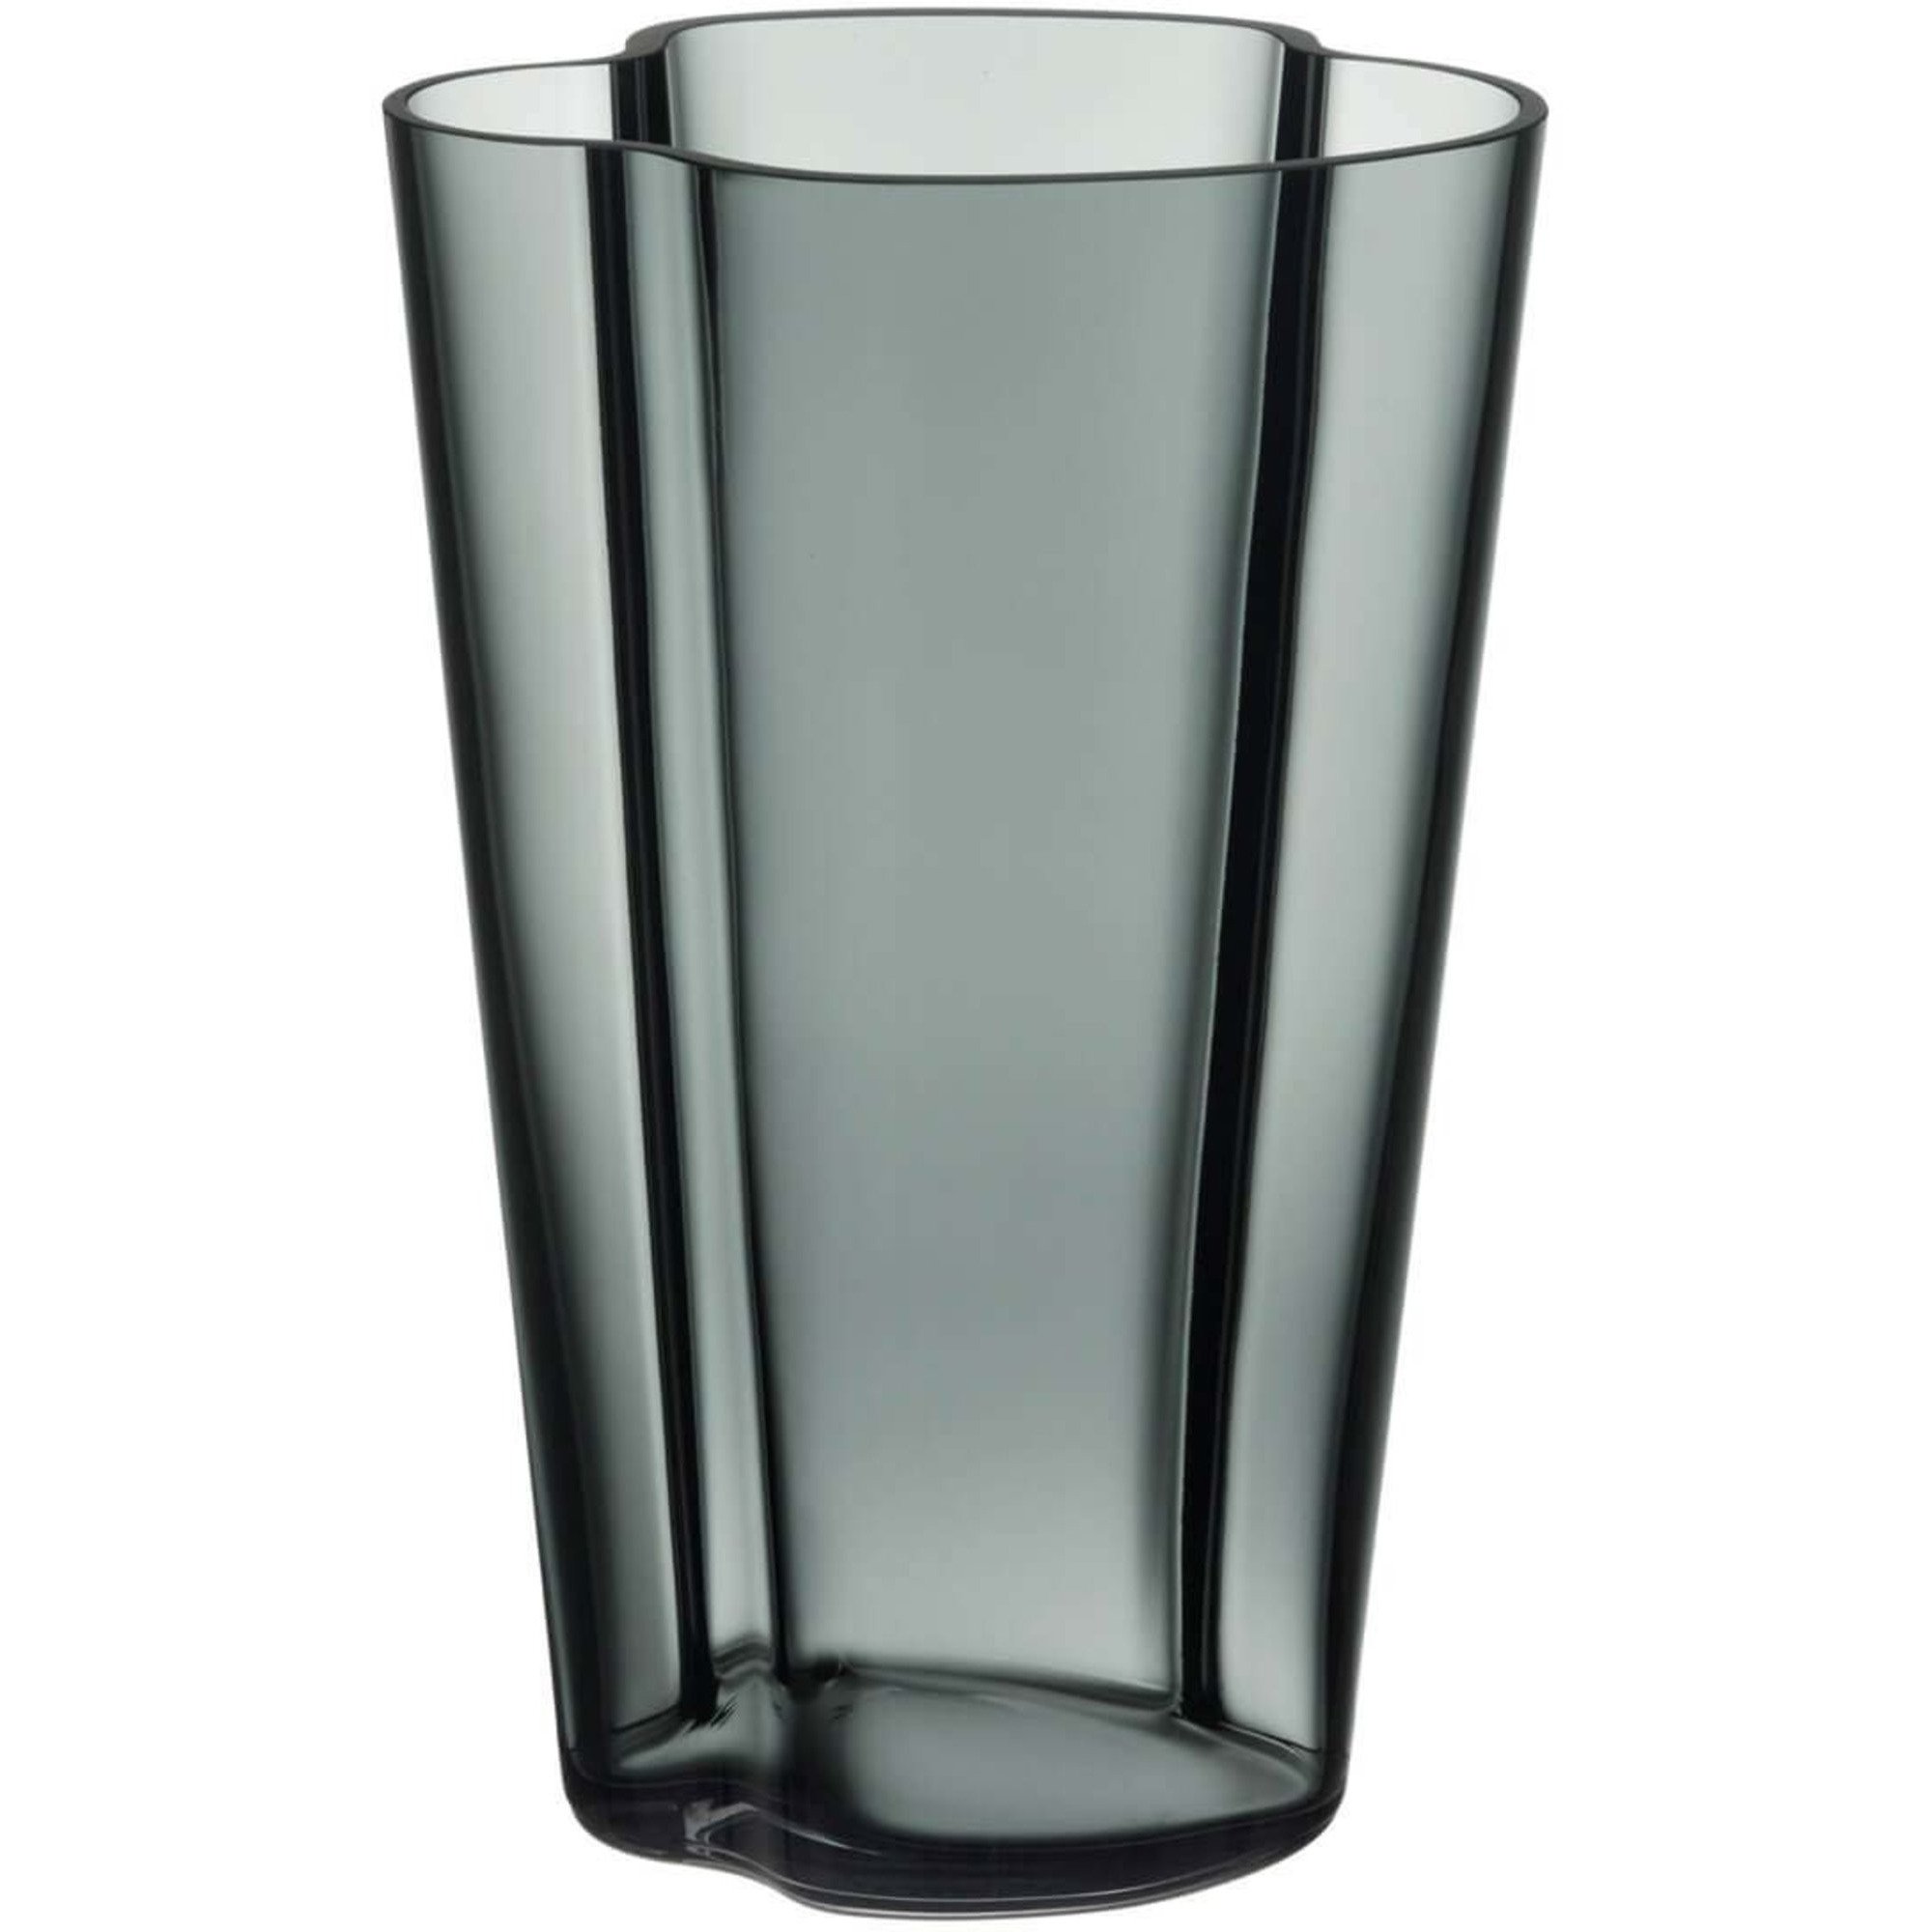 5: Iittala Aalto vase, 22 cm., mørk grå